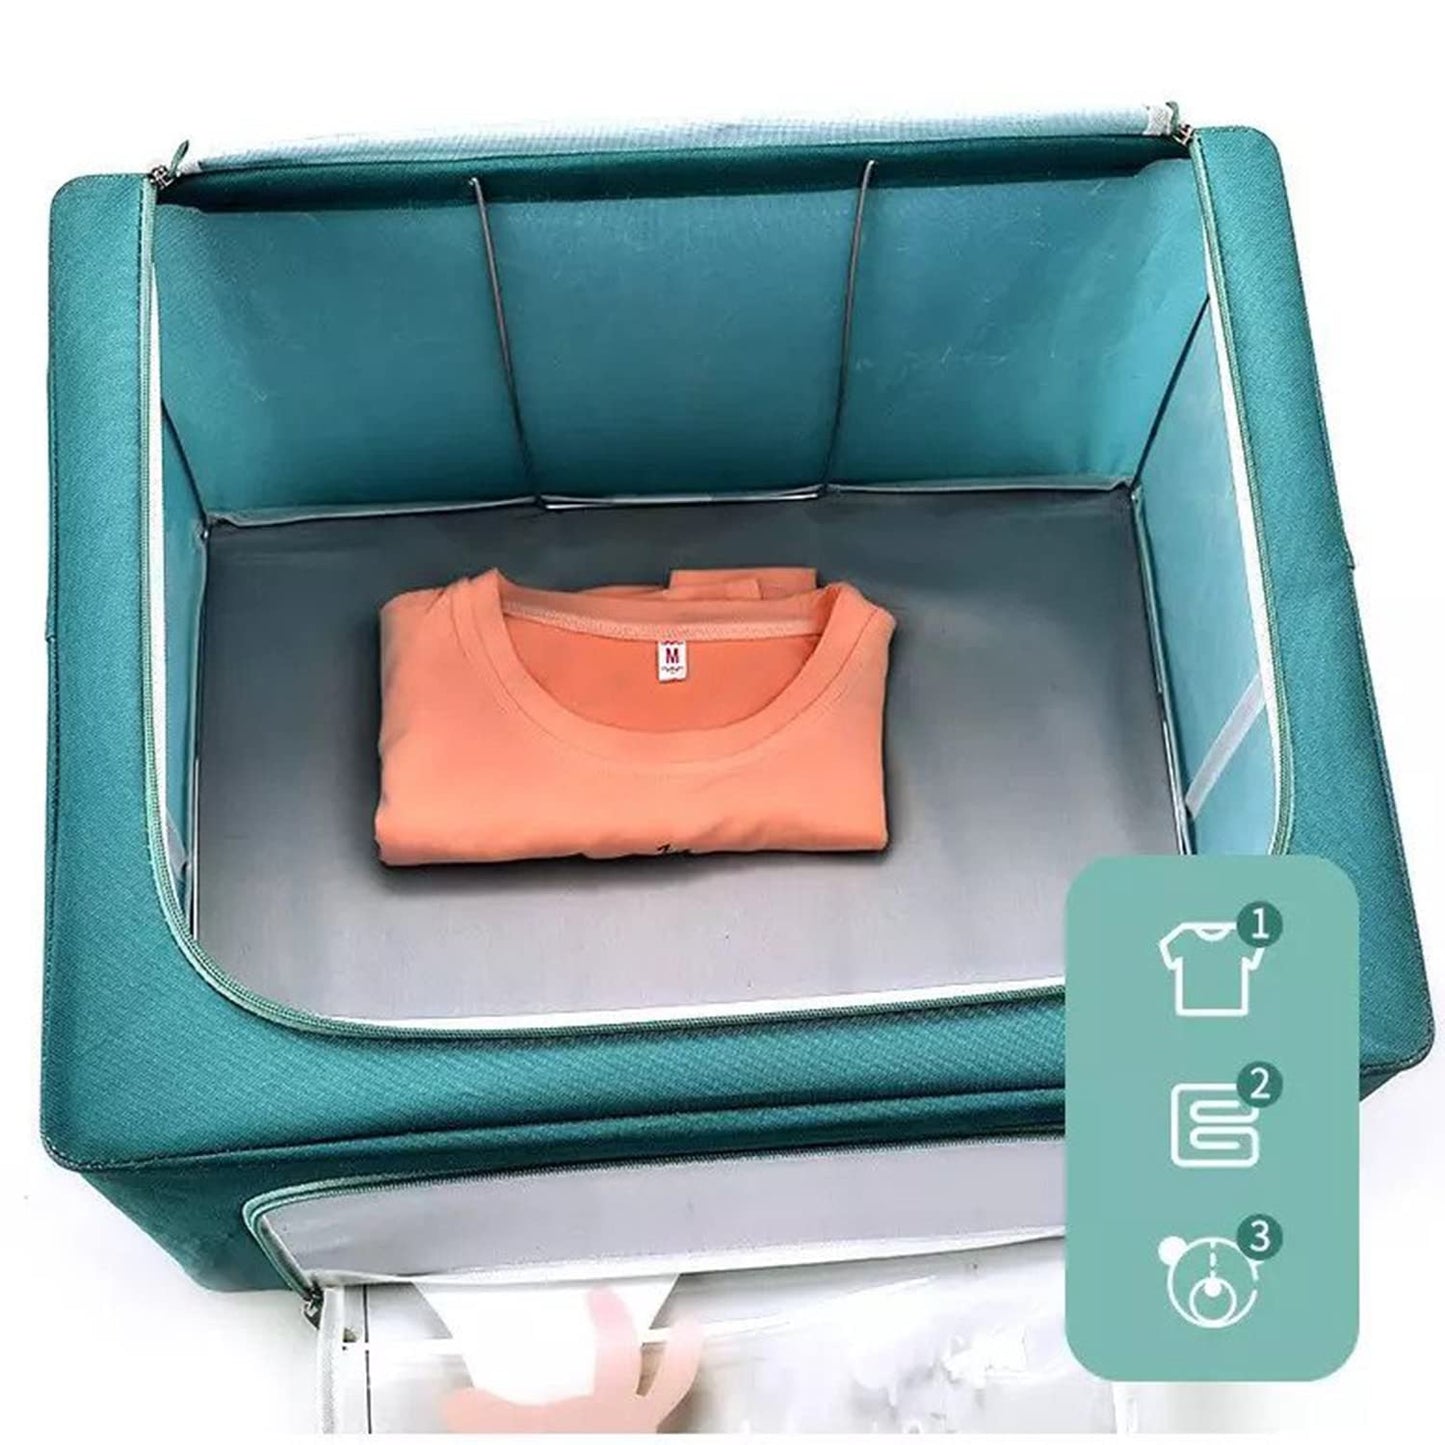 Large Capacity Foldable Clothing Storage Box - Hippo